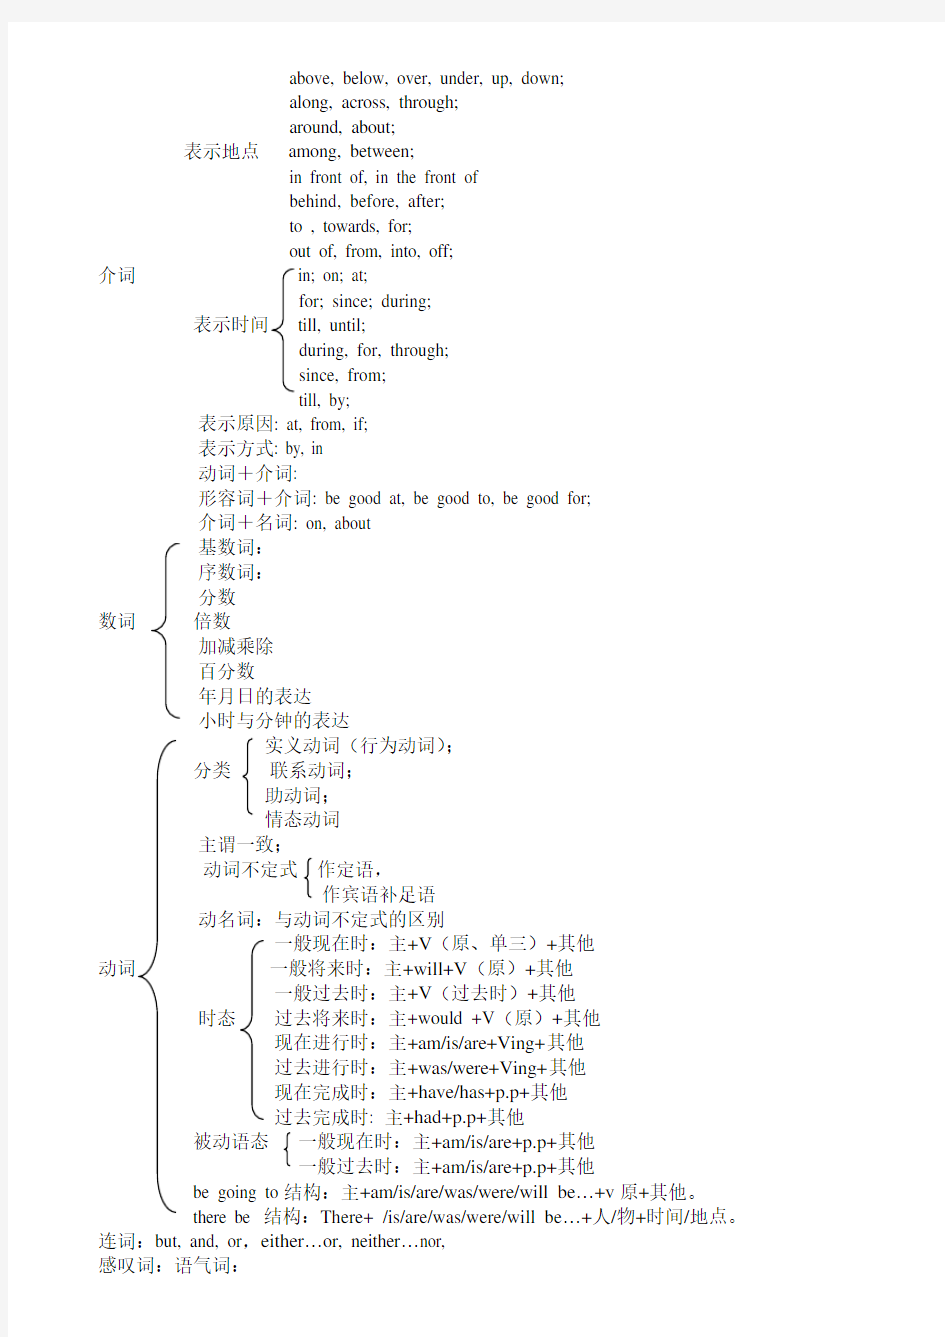 初中英语语法结构图示.